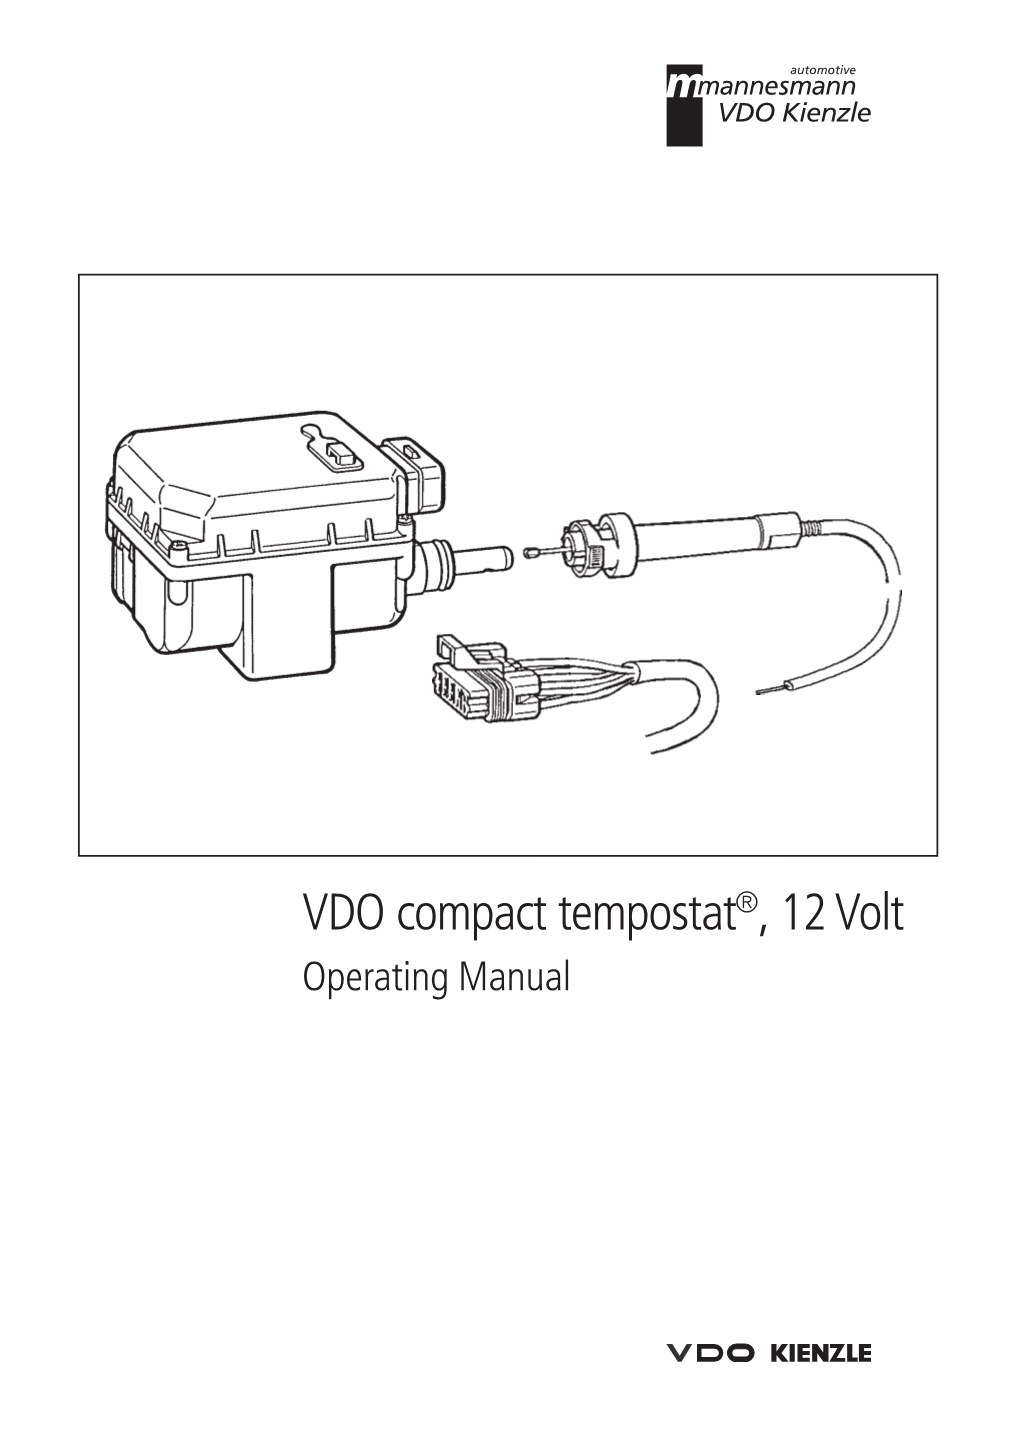 VDO Compact Tempostat®, 12 Volt Operating Manual